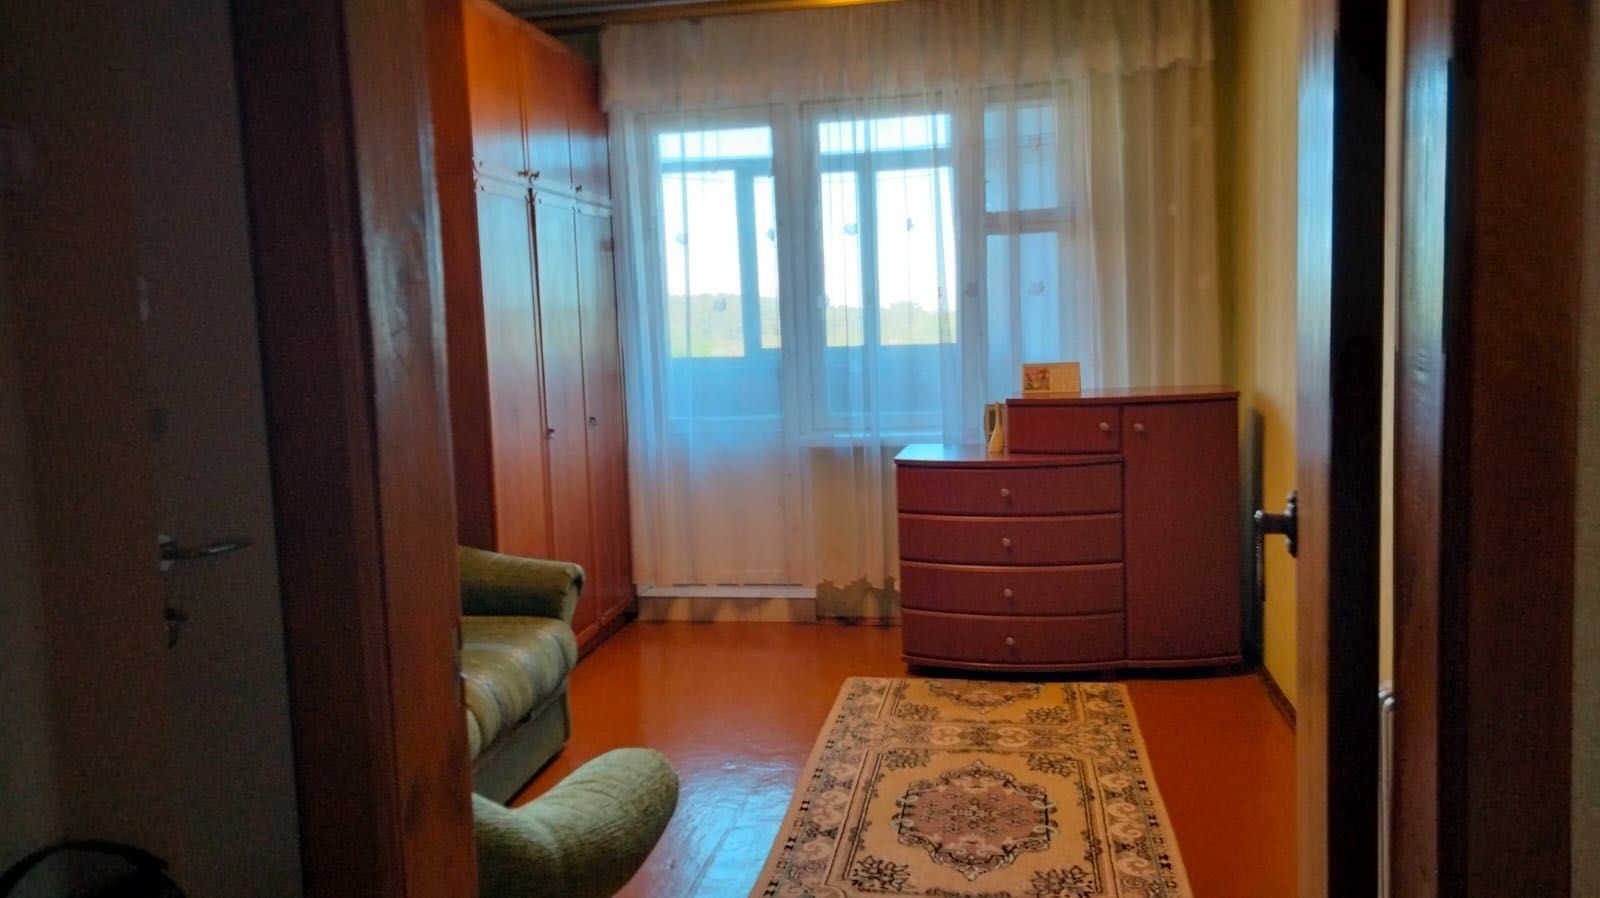 Продам 4-х кімнатну квартиру у м. Чернігові, від власника.